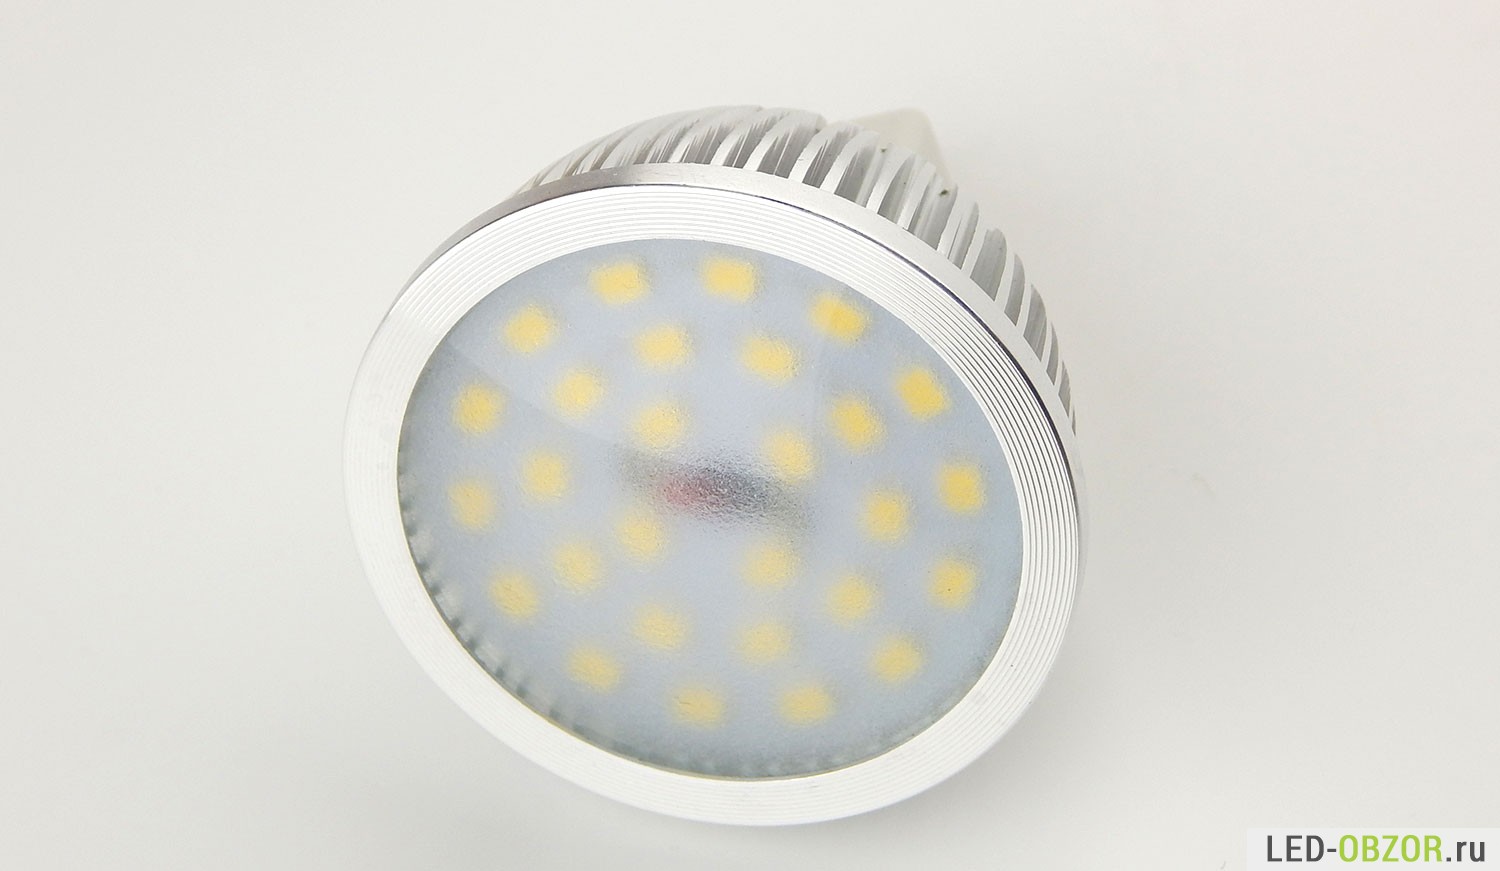 Замена галогеновых ламп на светодиодные в люстре. 3 варианта